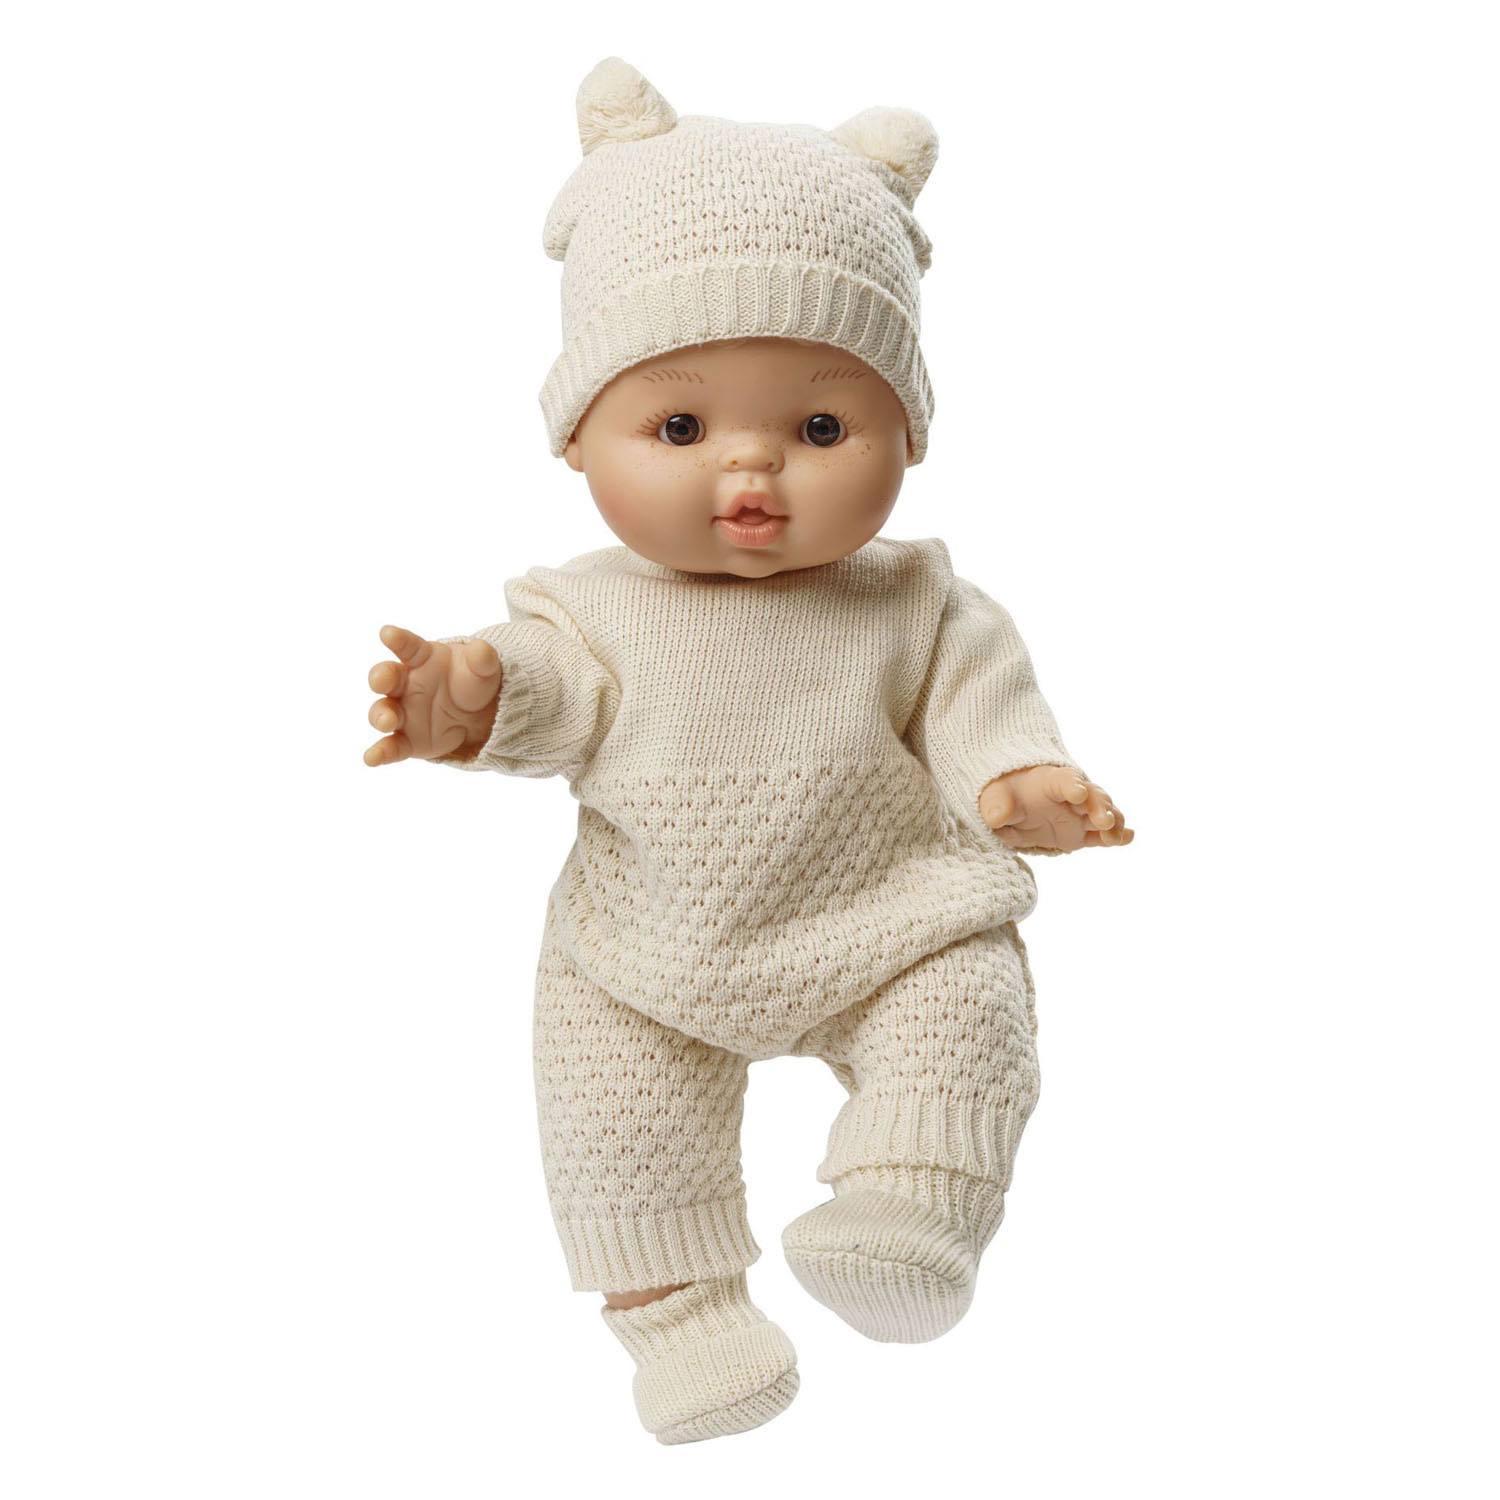 Ensemble de tricot pour poupée en coton biologique, 35-45 cm